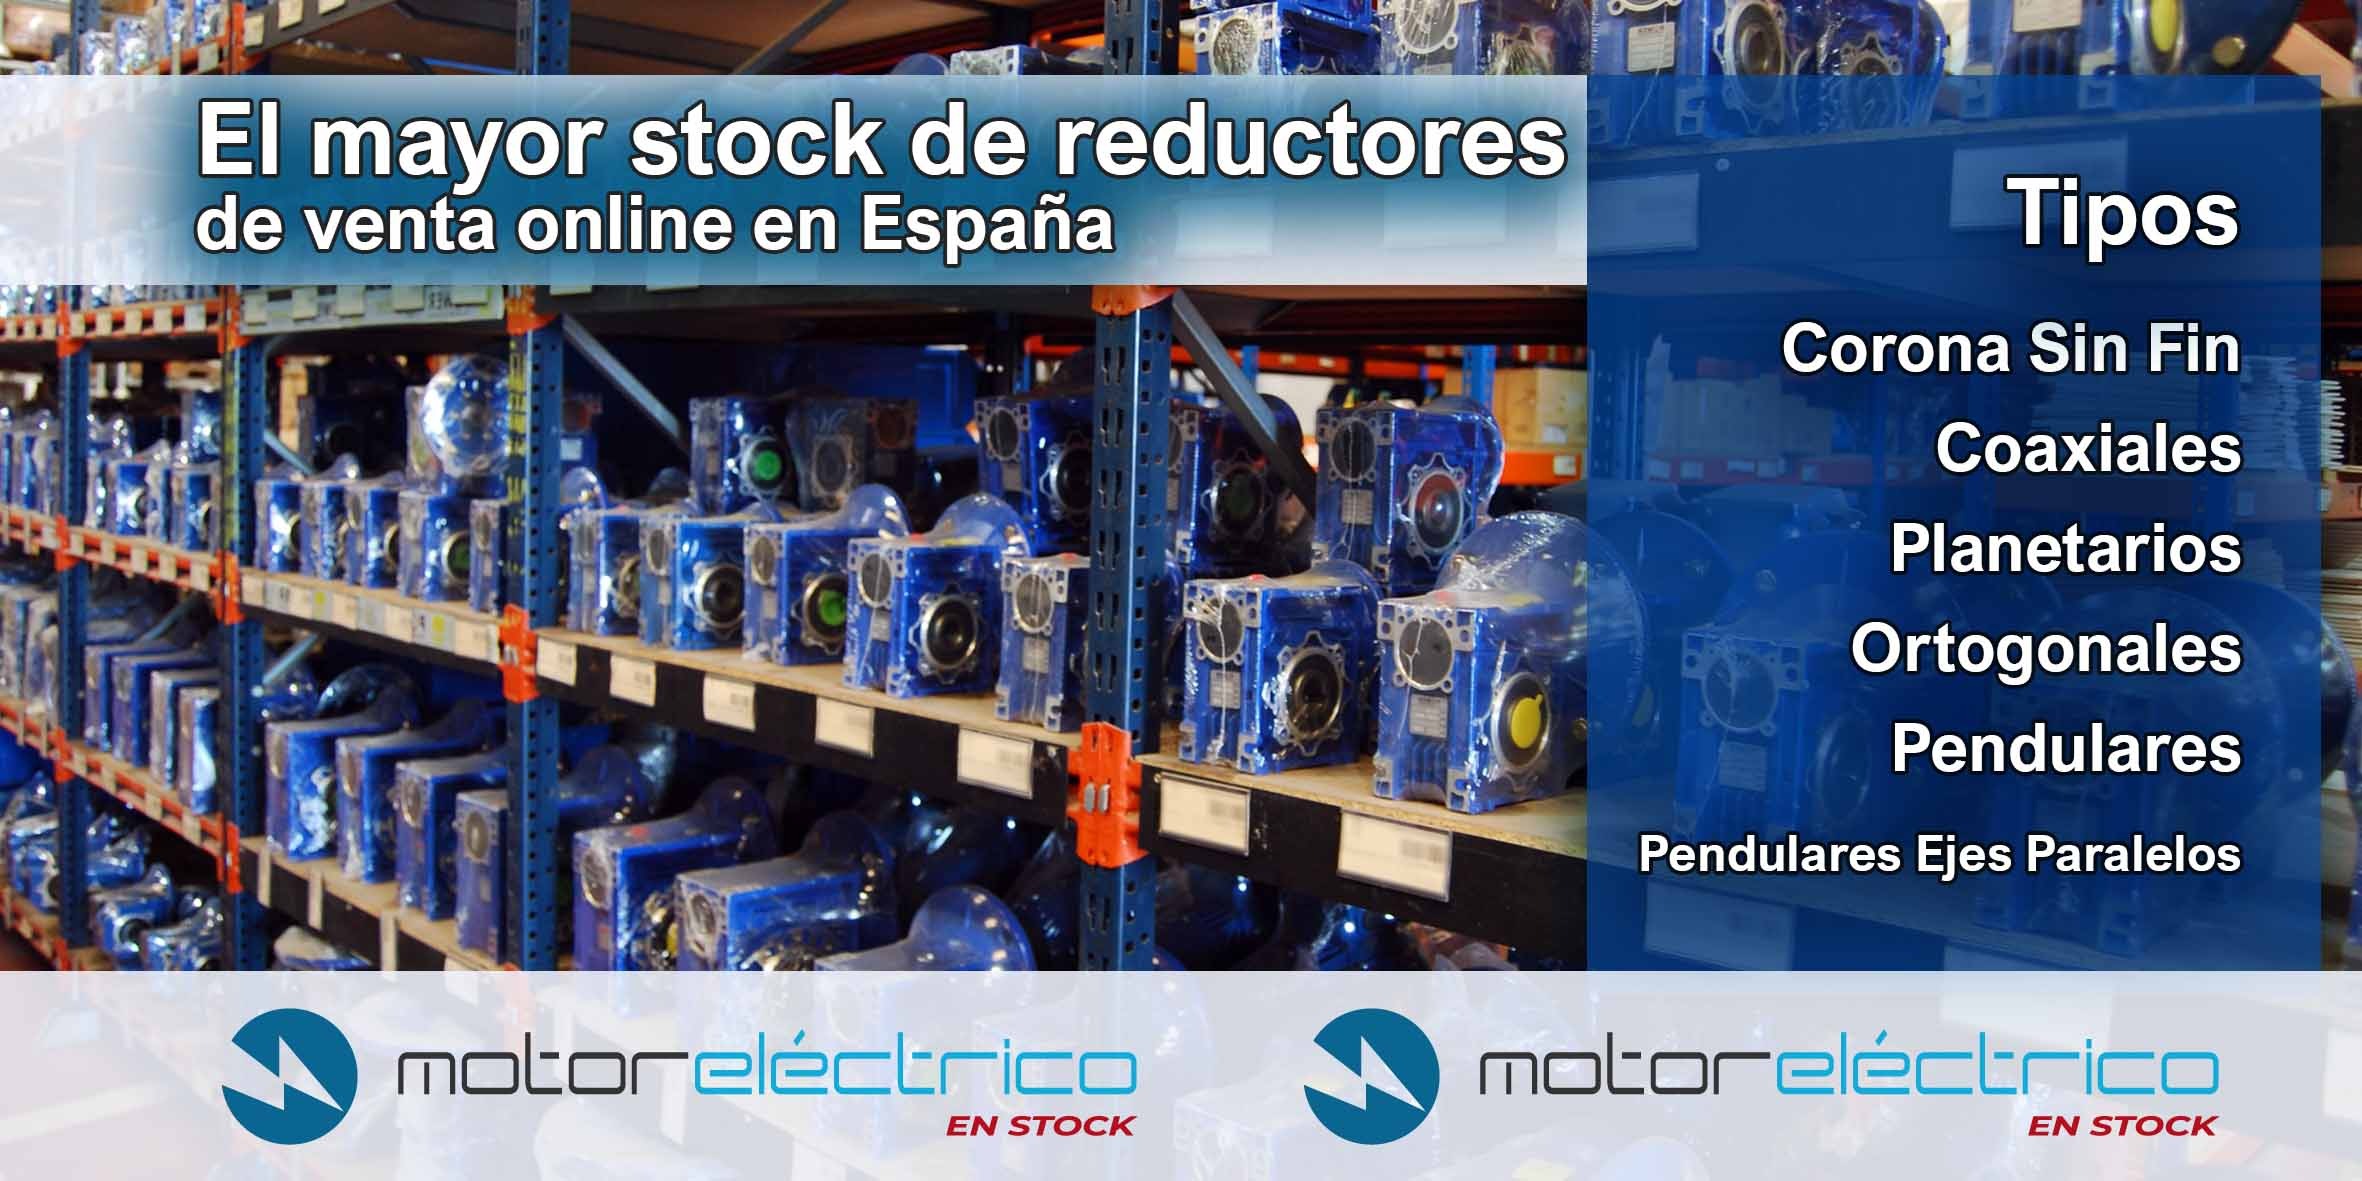 Motor Eléctrico En Stock cuenta con el mayor stock en España de venta online de reductores con más de 7.000 referencias